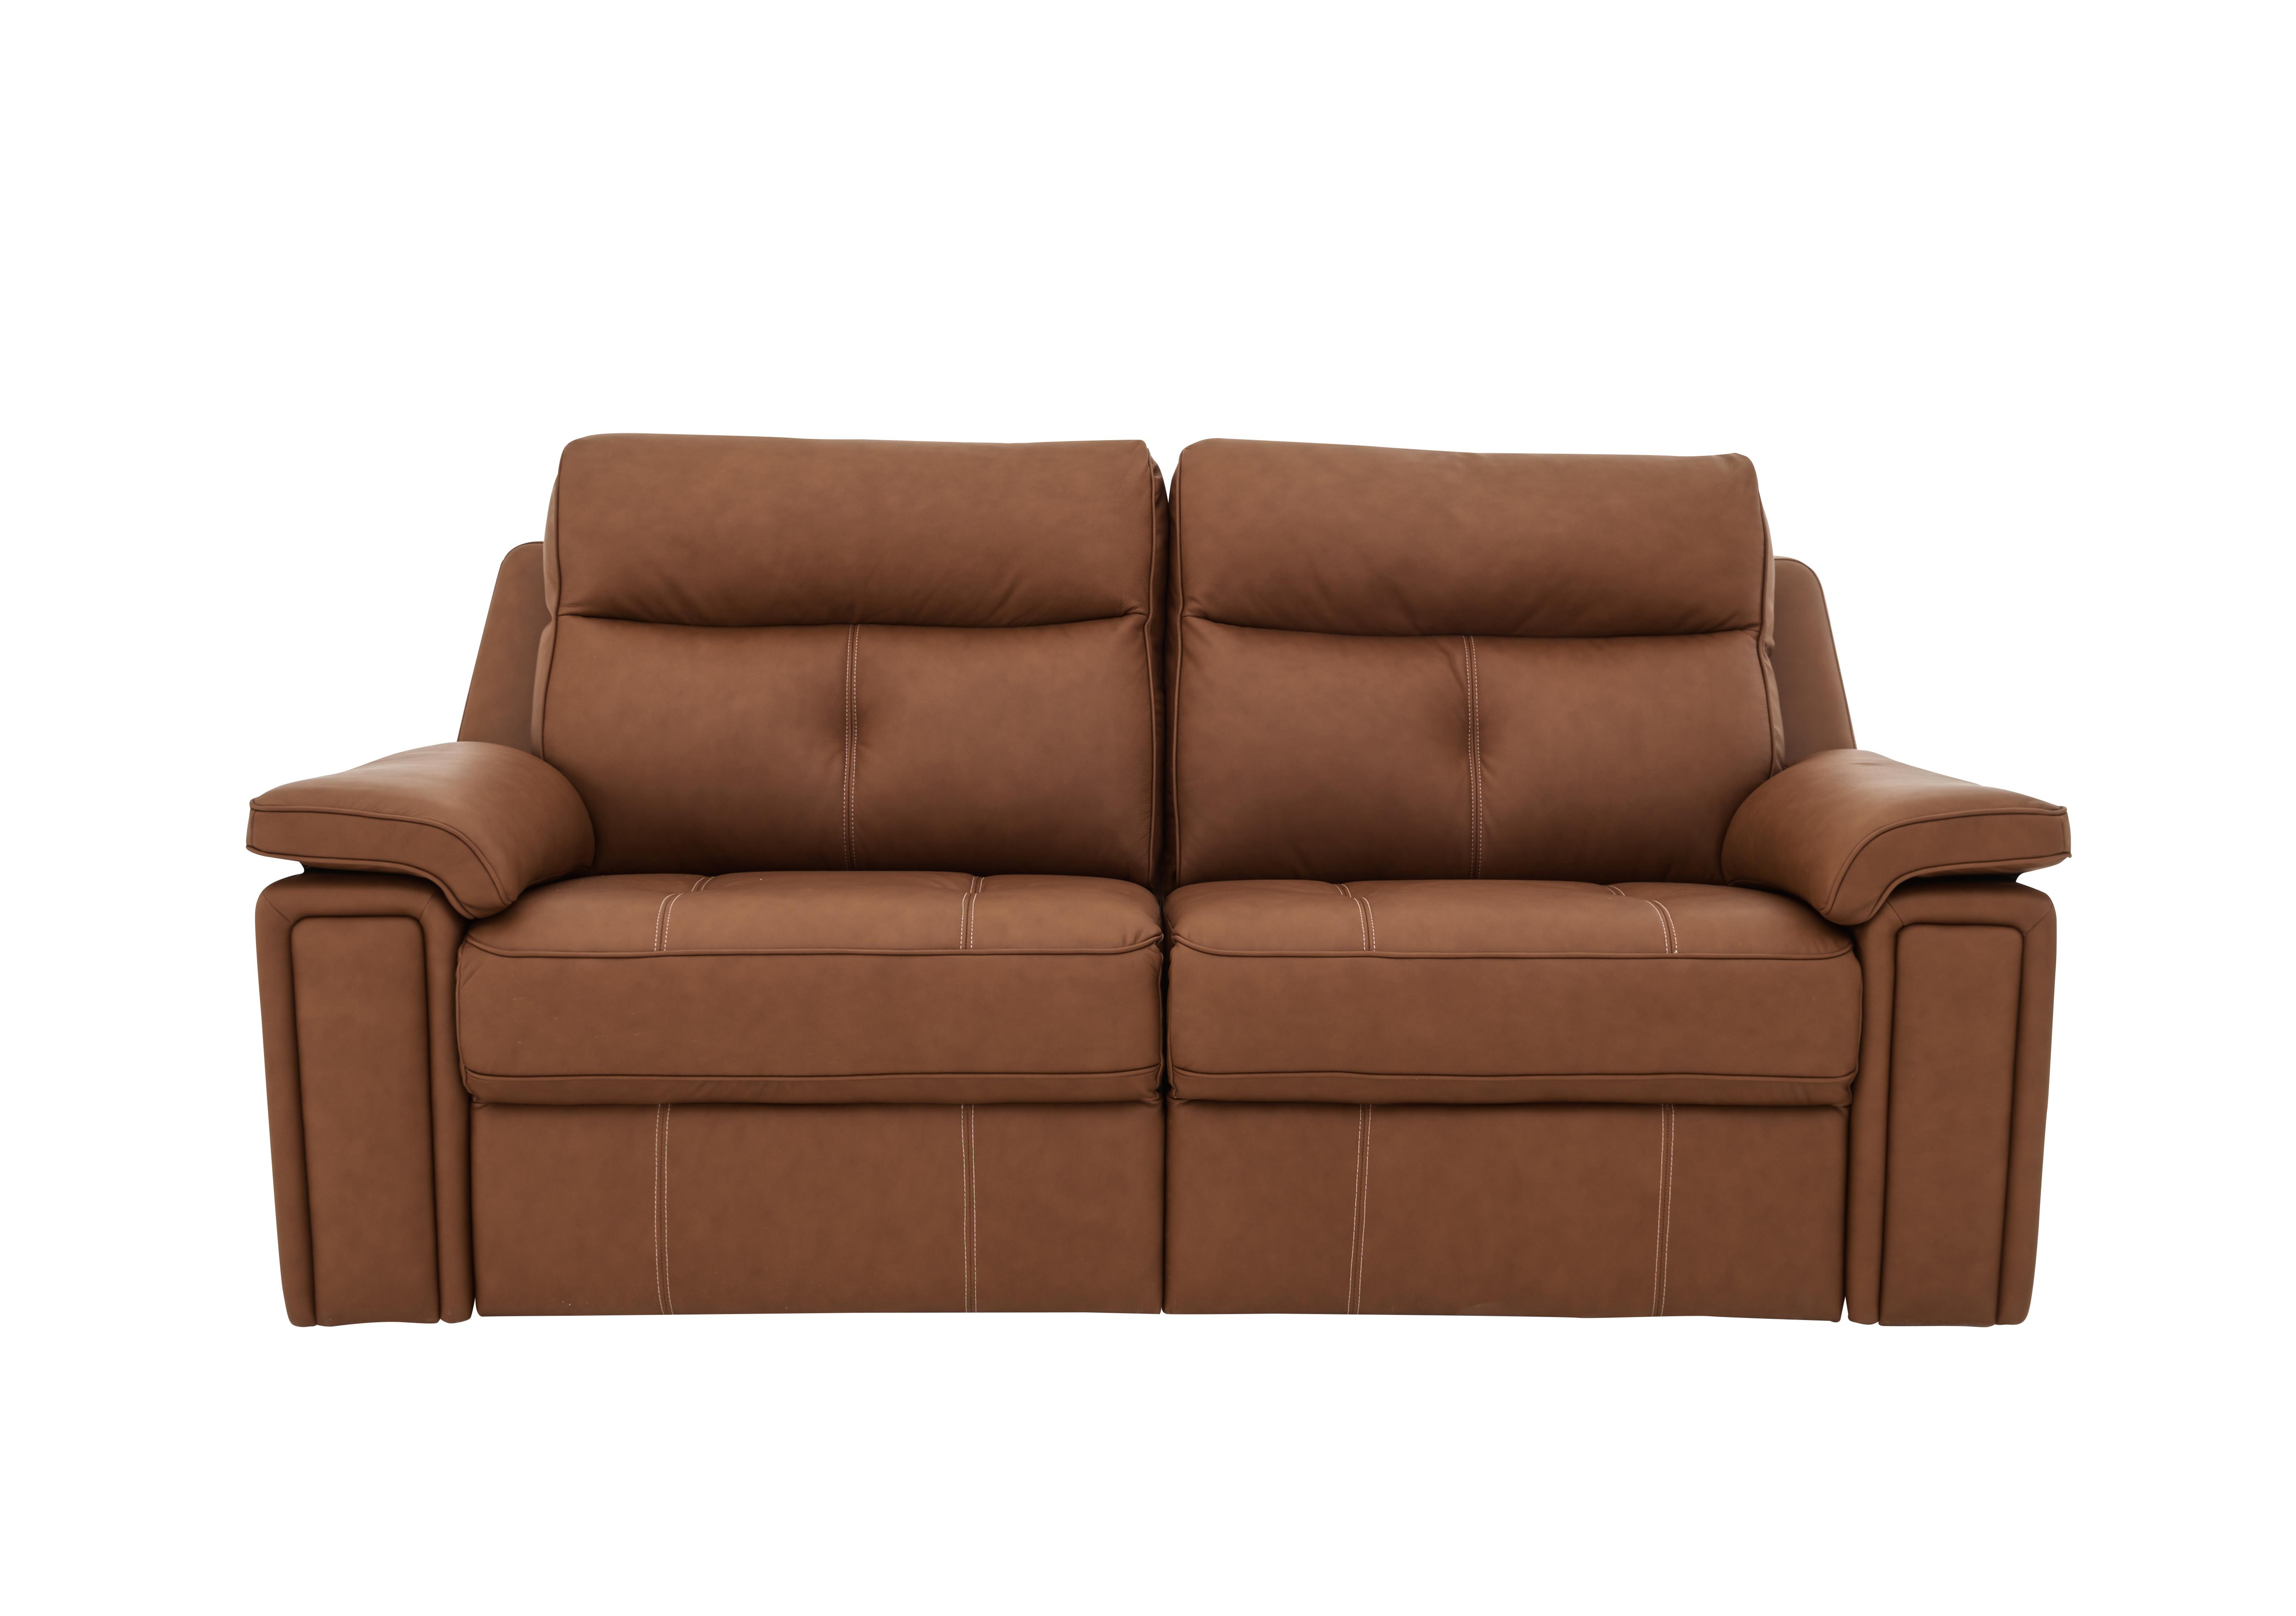 washington 3 seater recliner sofa - g plan - furniture village